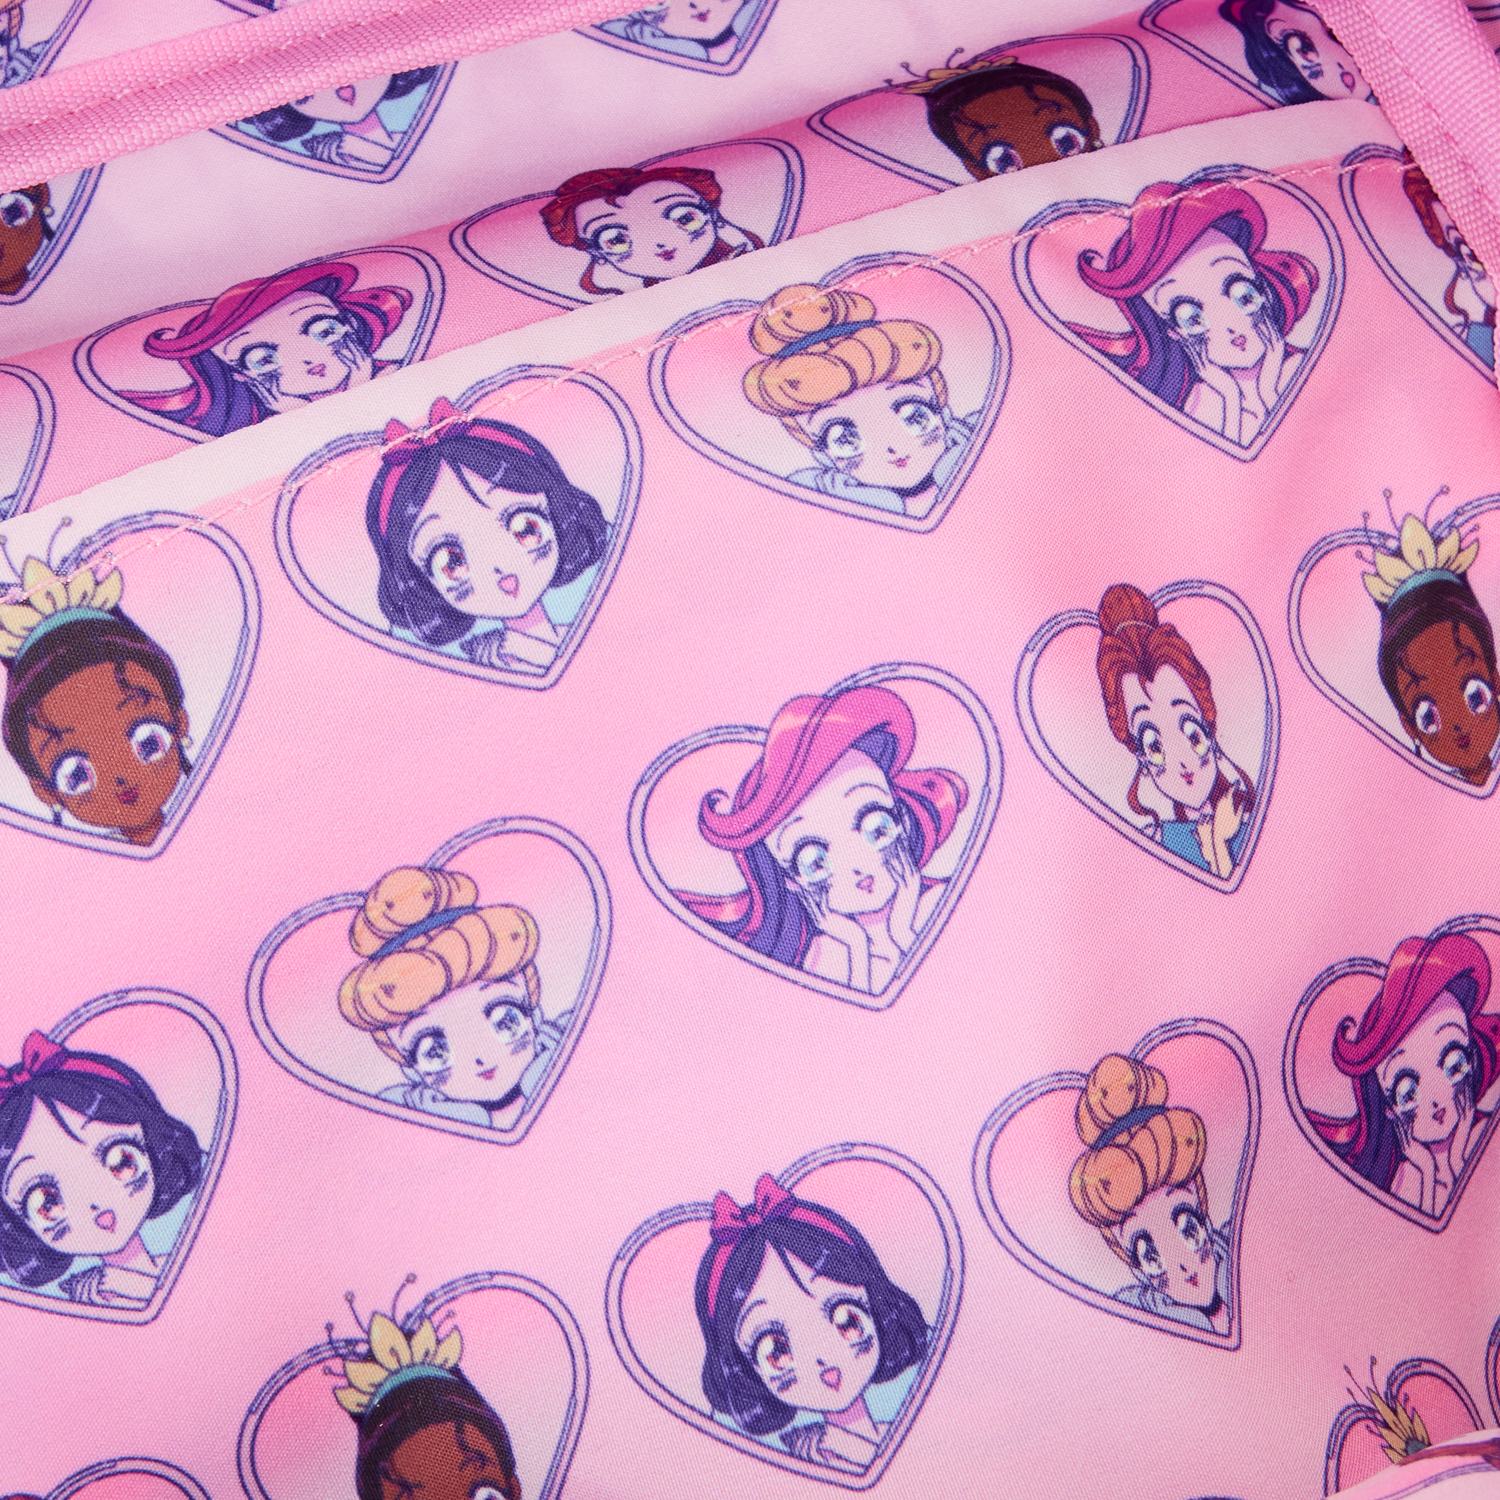 Loungefly x Disney Princess Manga Style AOP Nylon Backpack